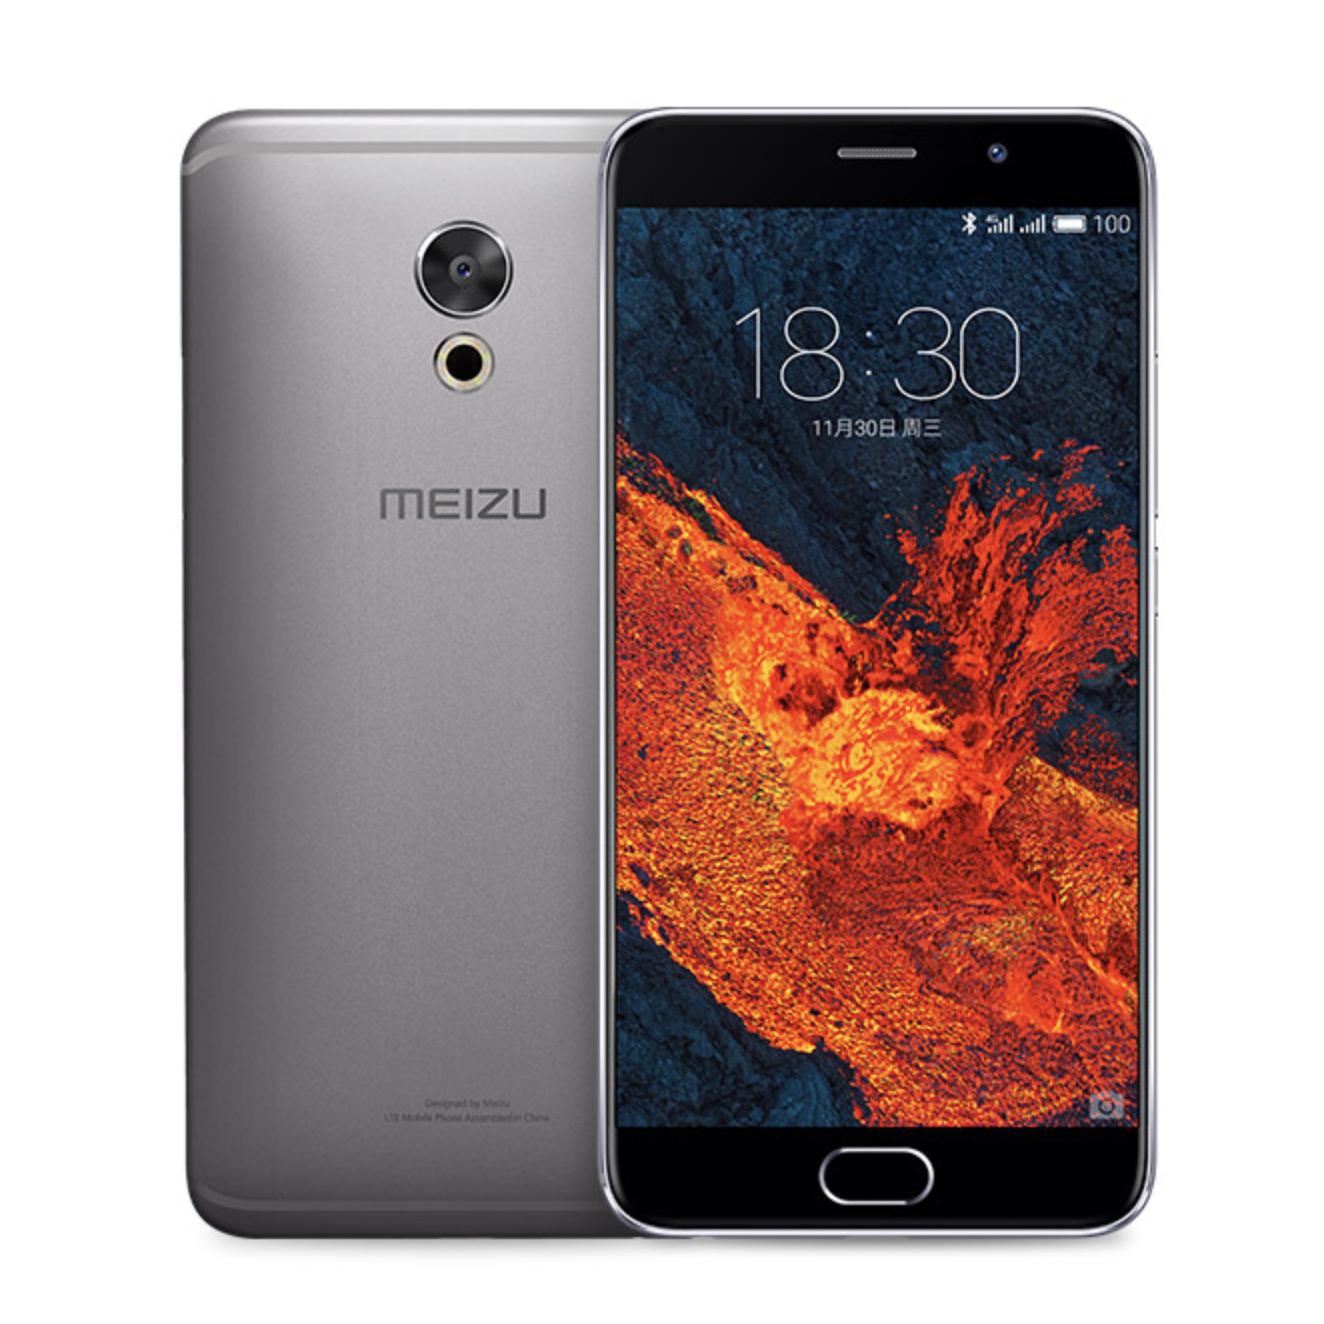 MEIZU 魅族 PRO 6 Plus 智能手机 4GB+64GB 深空灰